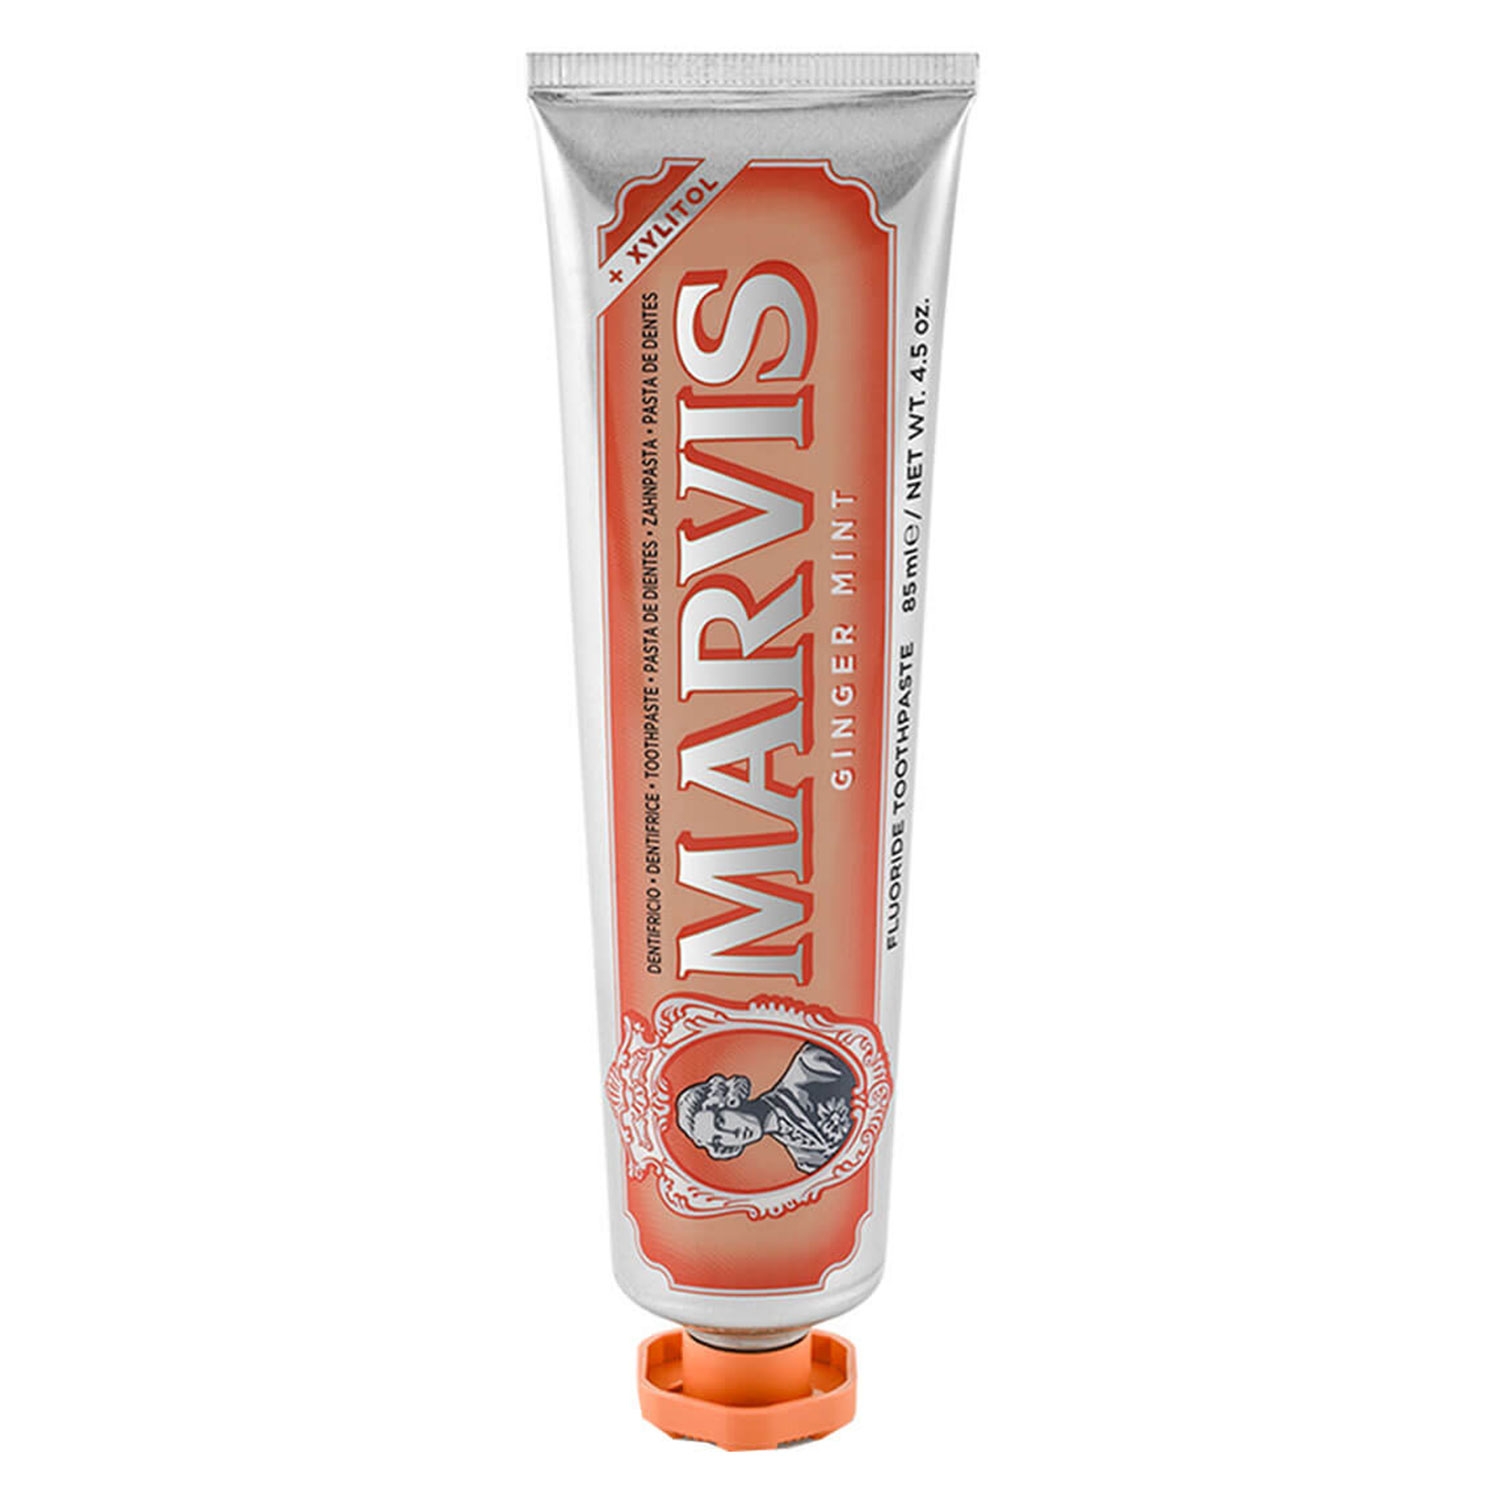 Produktbild von Marvis - Ginger Mint Toothpaste